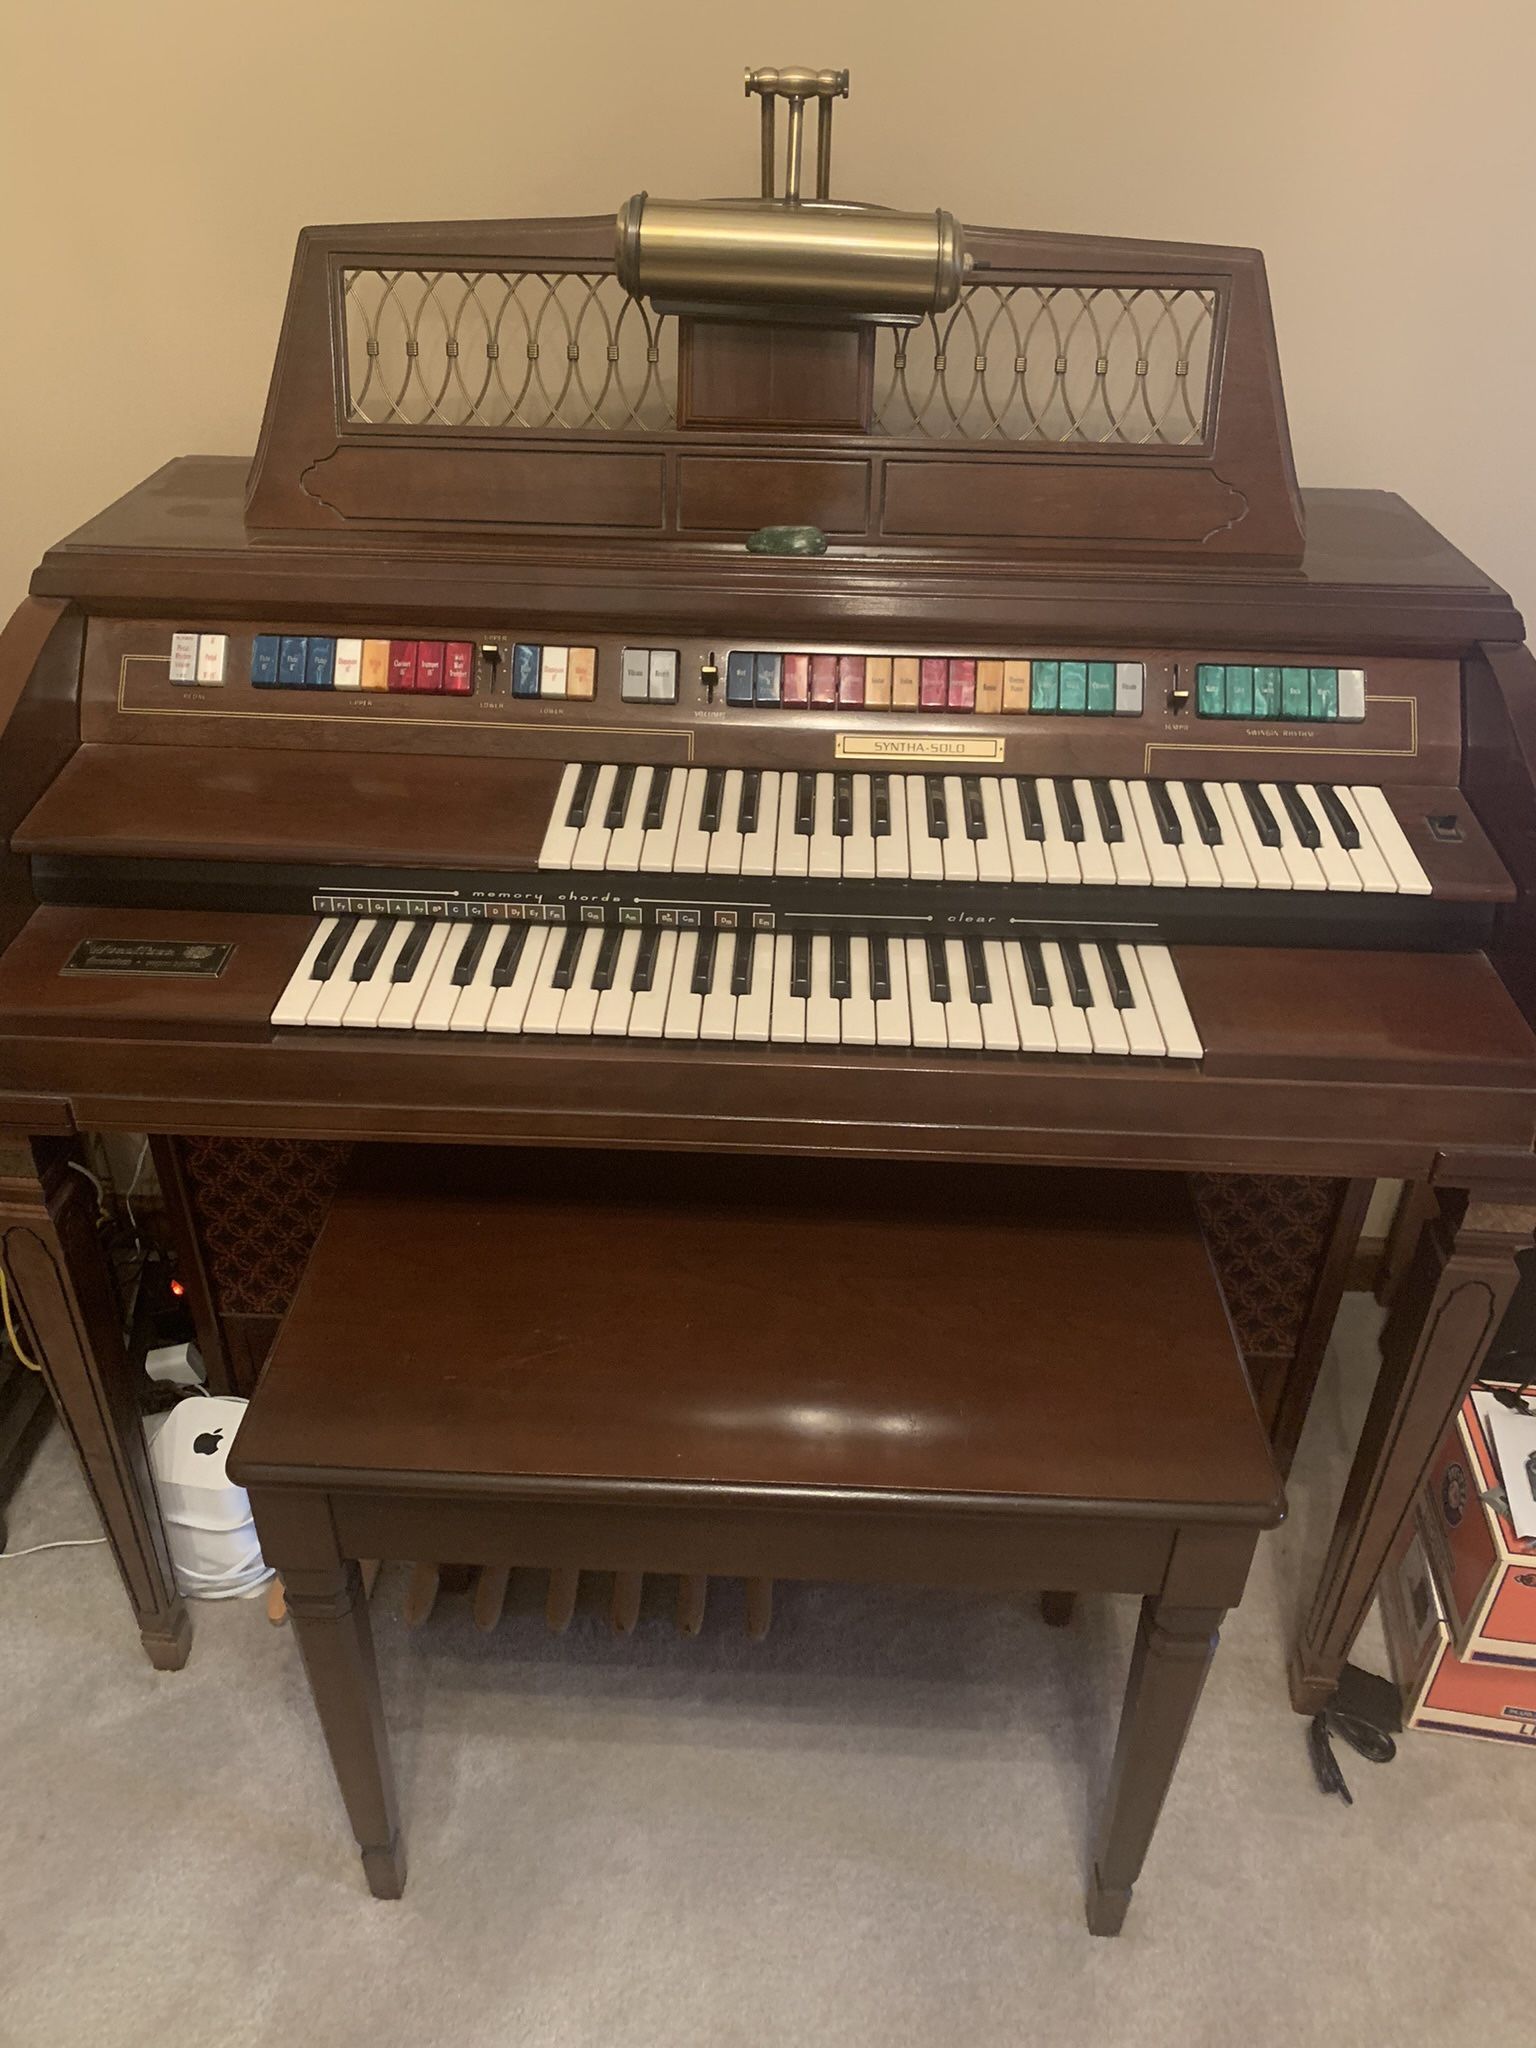 Wurlitzer Organ With Bench